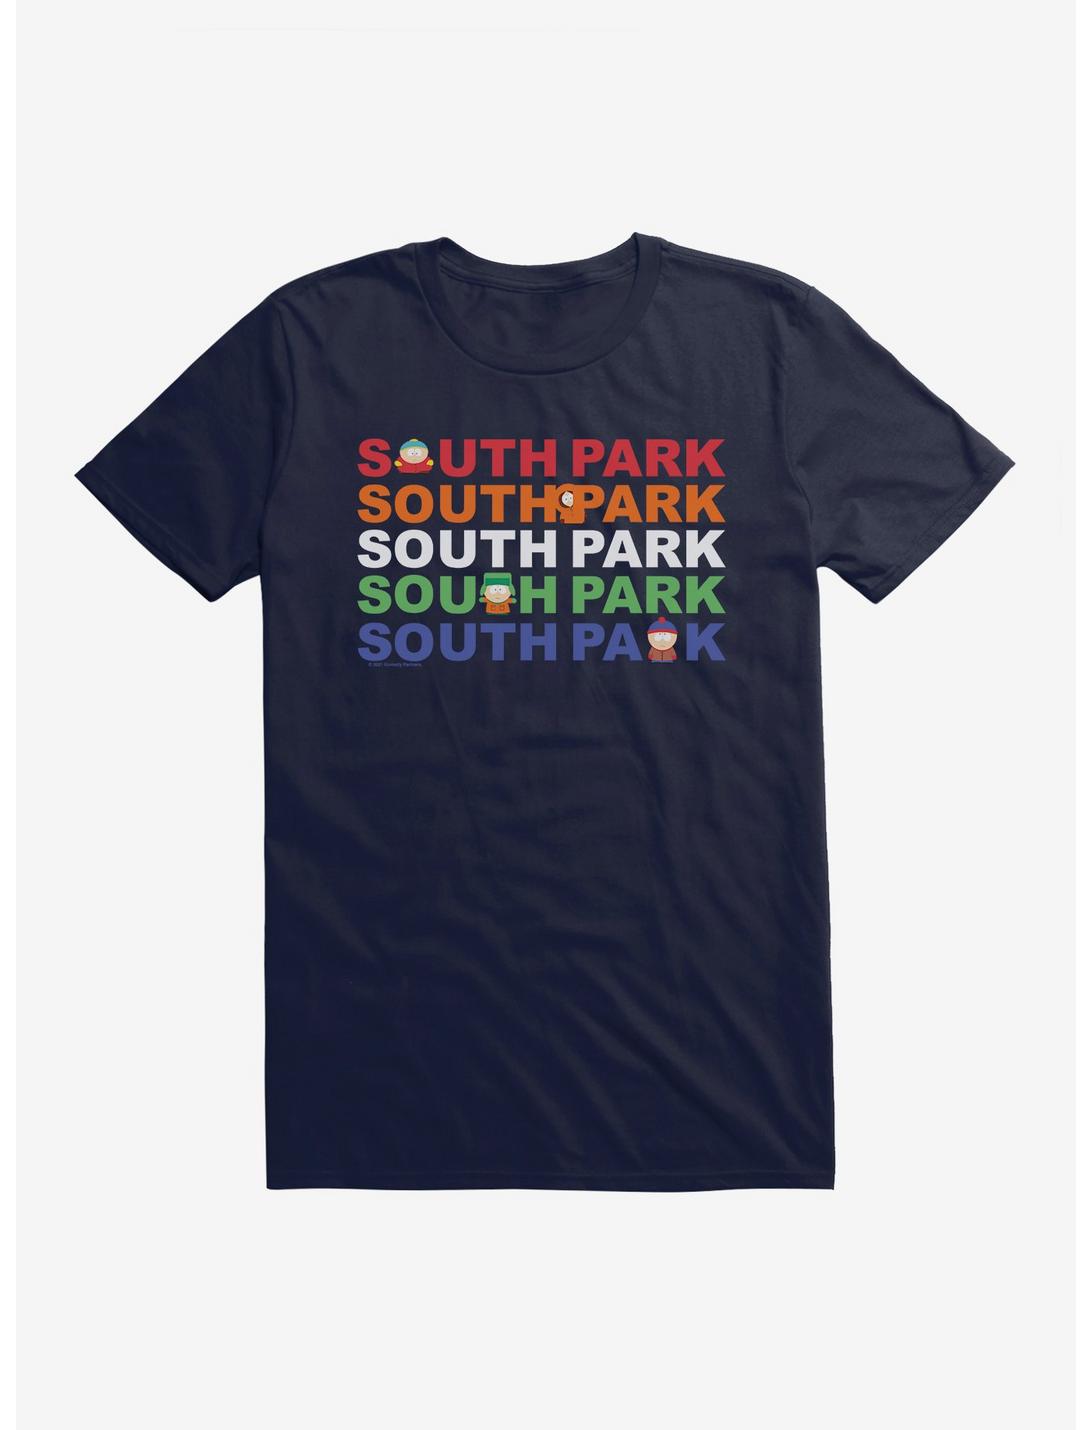 South Park Title by Title T-Shirt, , hi-res